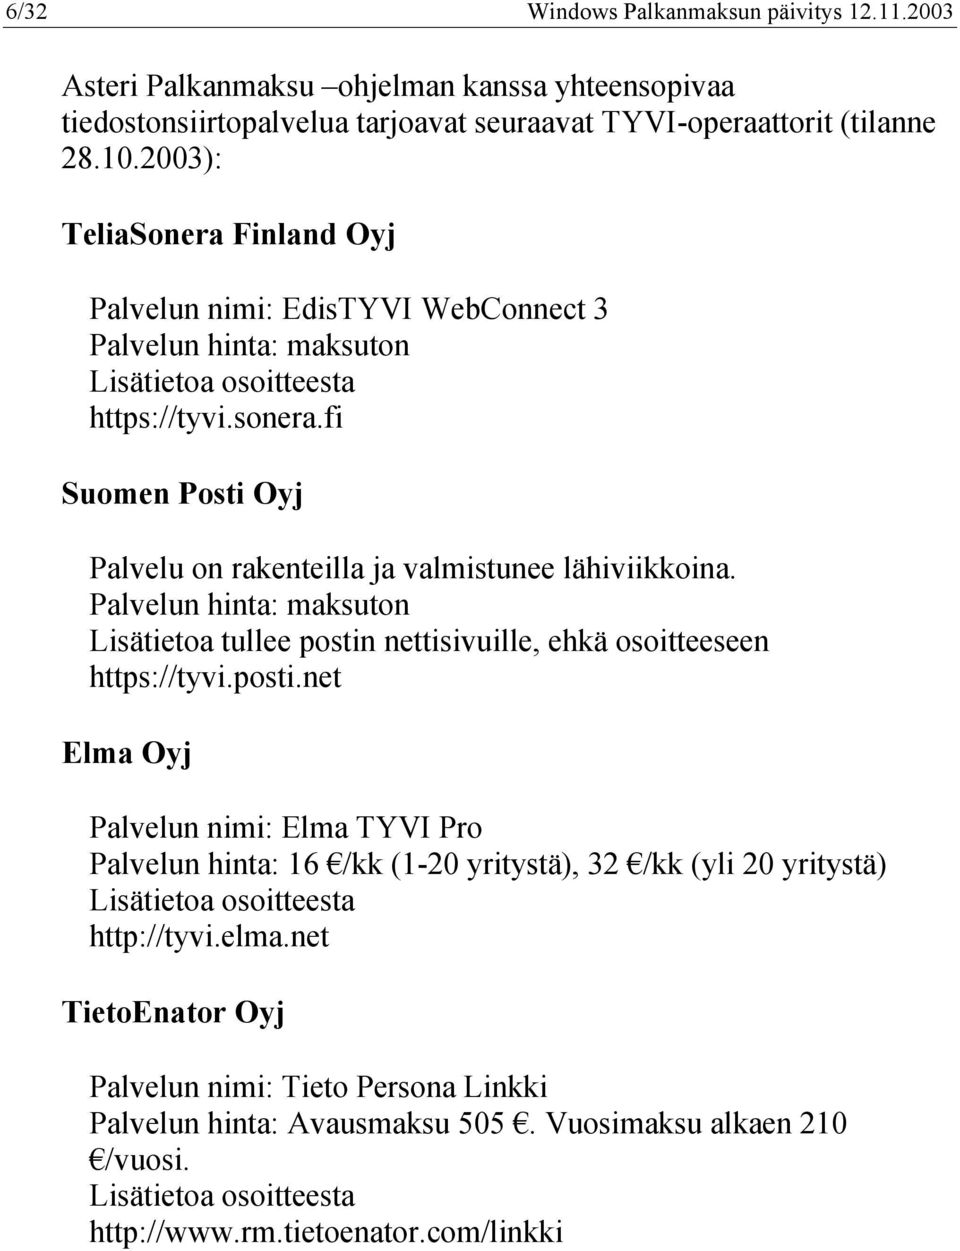 fi Suomen Posti Oyj Palvelu on rakenteilla ja valmistunee lähiviikkoina. Palvelun hinta: maksuton Lisätietoa tullee postin